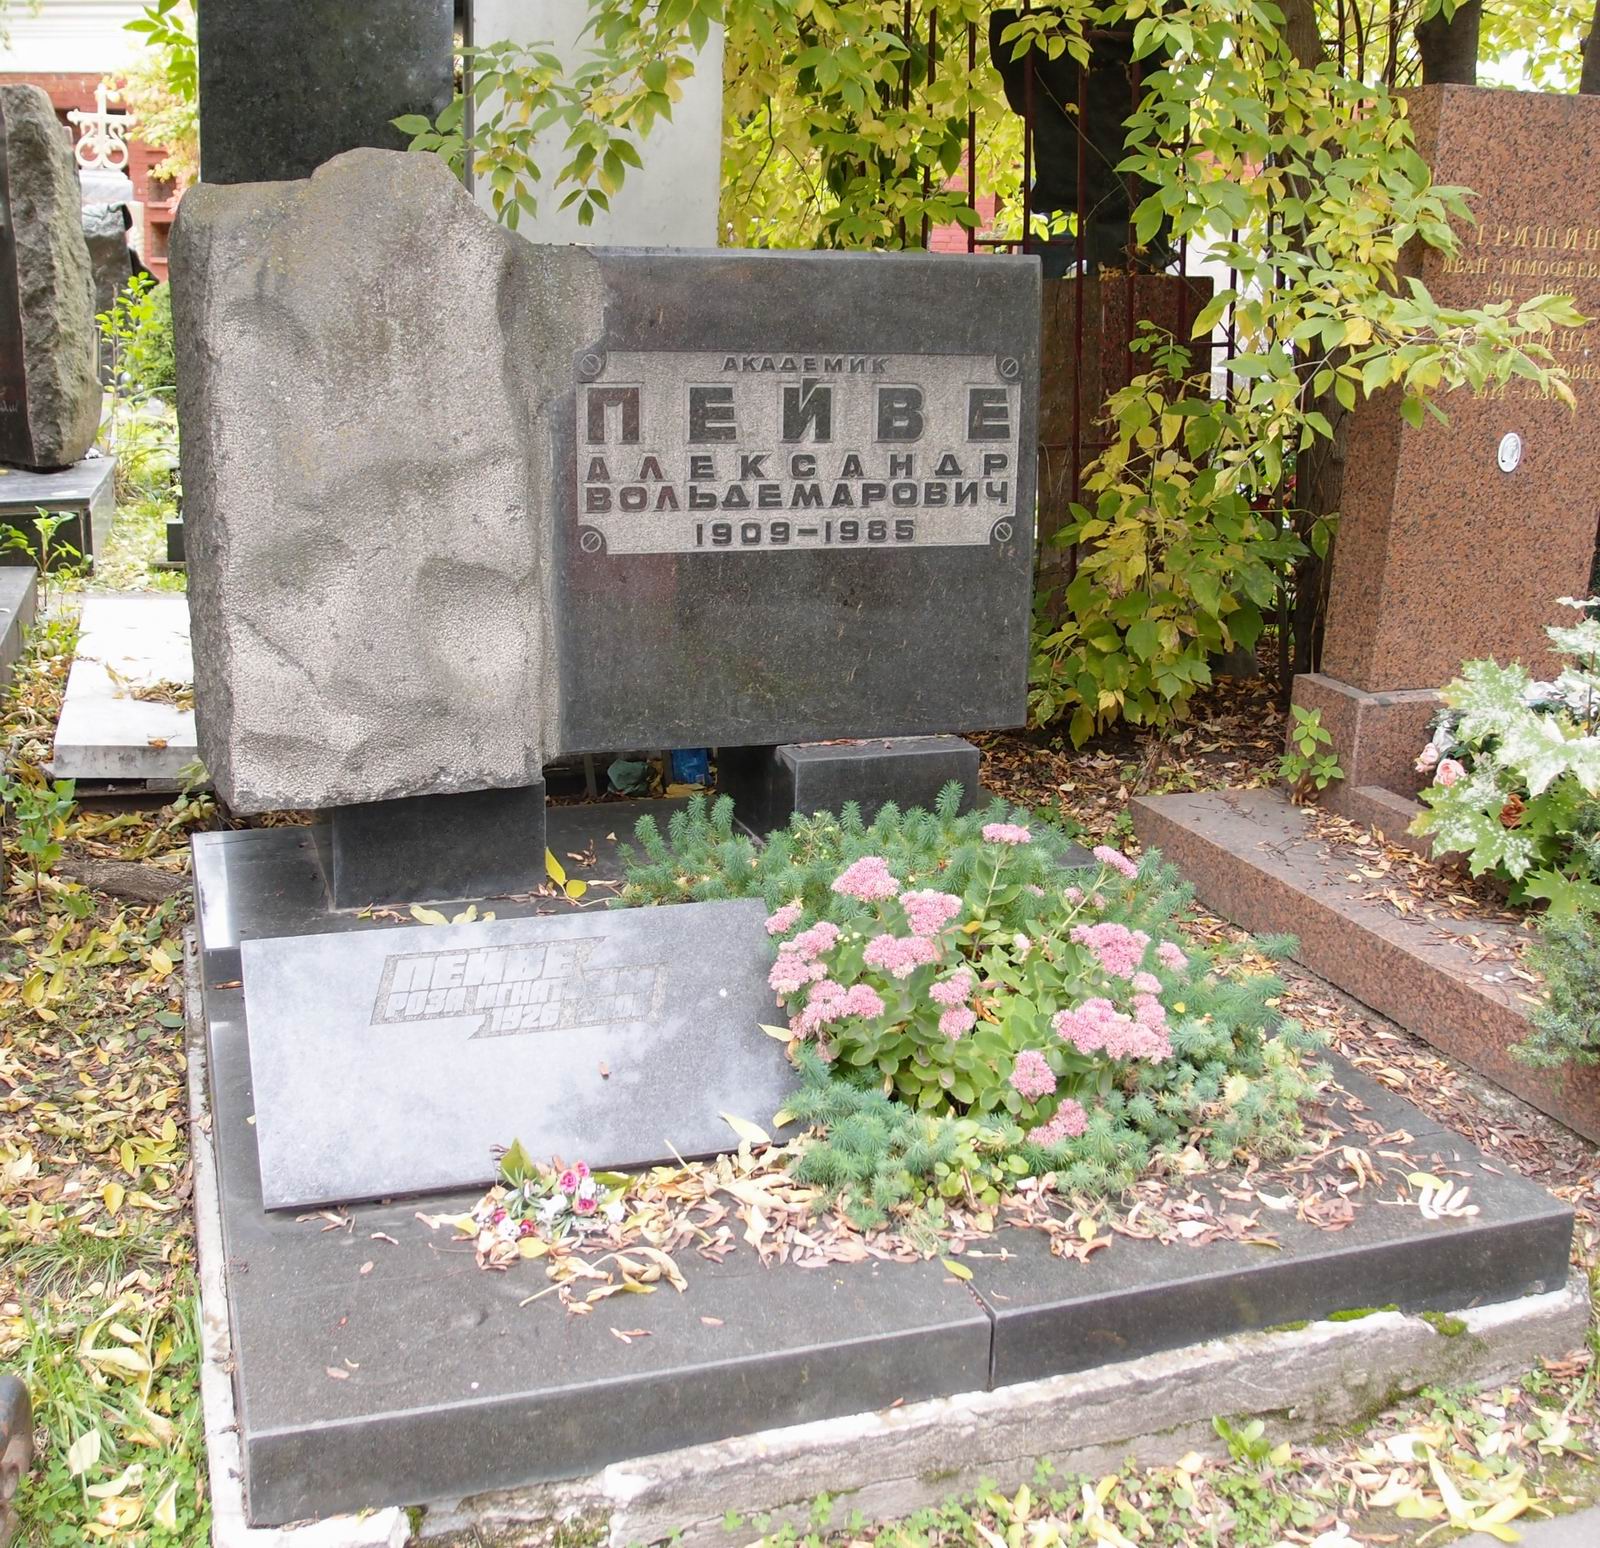 Памятник на могиле Пейве А.В. (1909-1985), арх. И.Шадрин, на Новодевичьем кладбище (10-3-8).